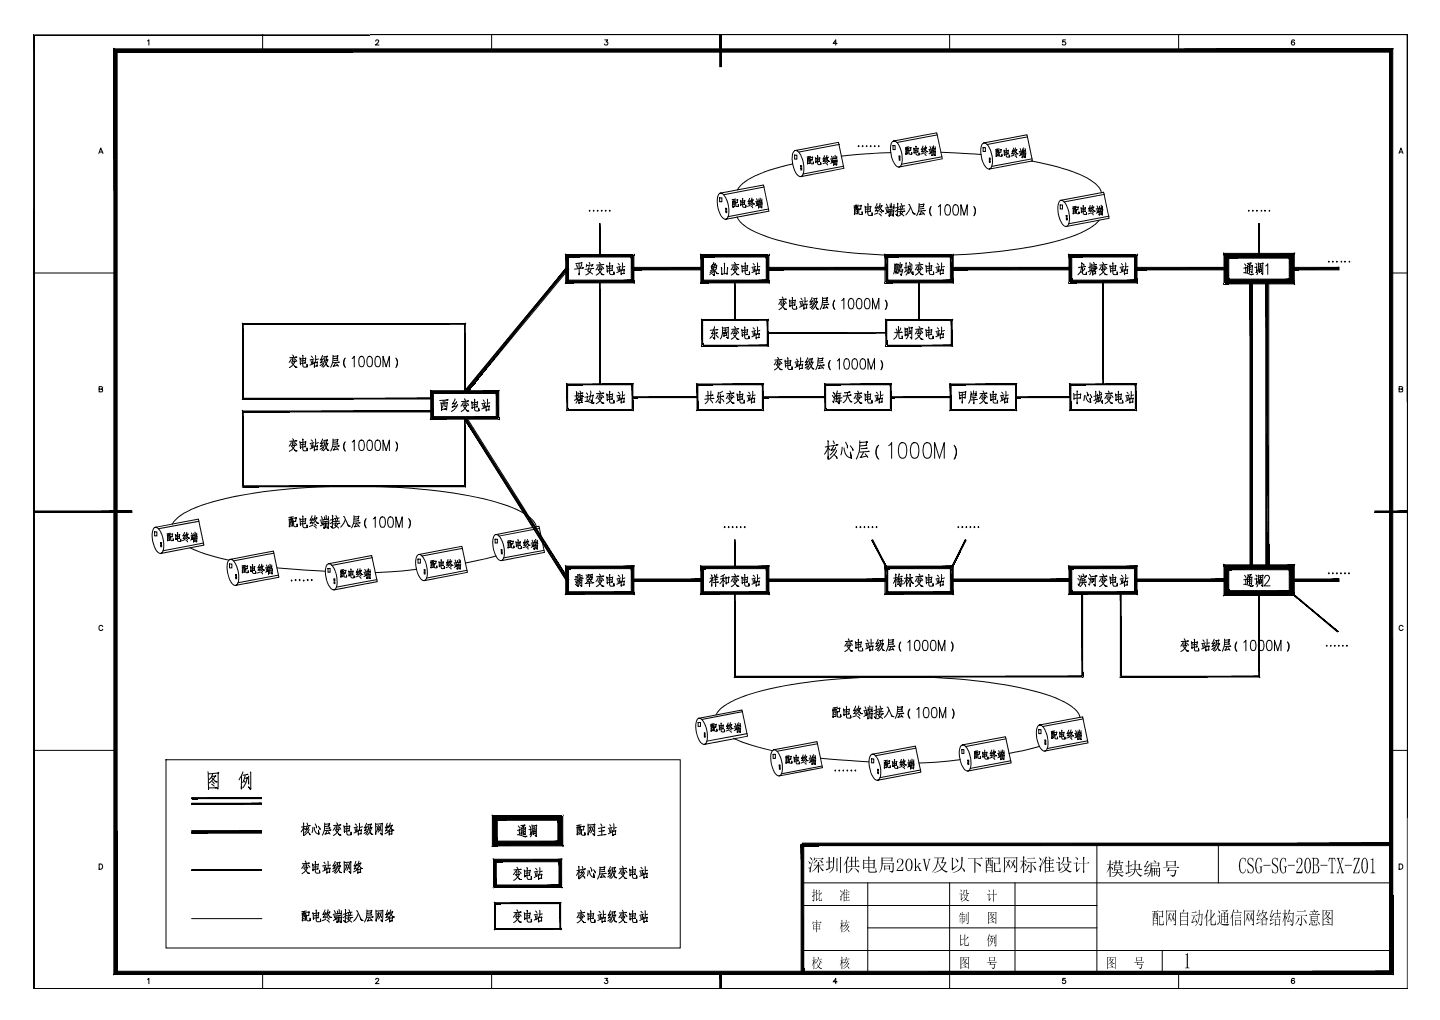 CSG-SG-20B-TX-Z01-1 配网自动化通信网络结构示意图.dwg